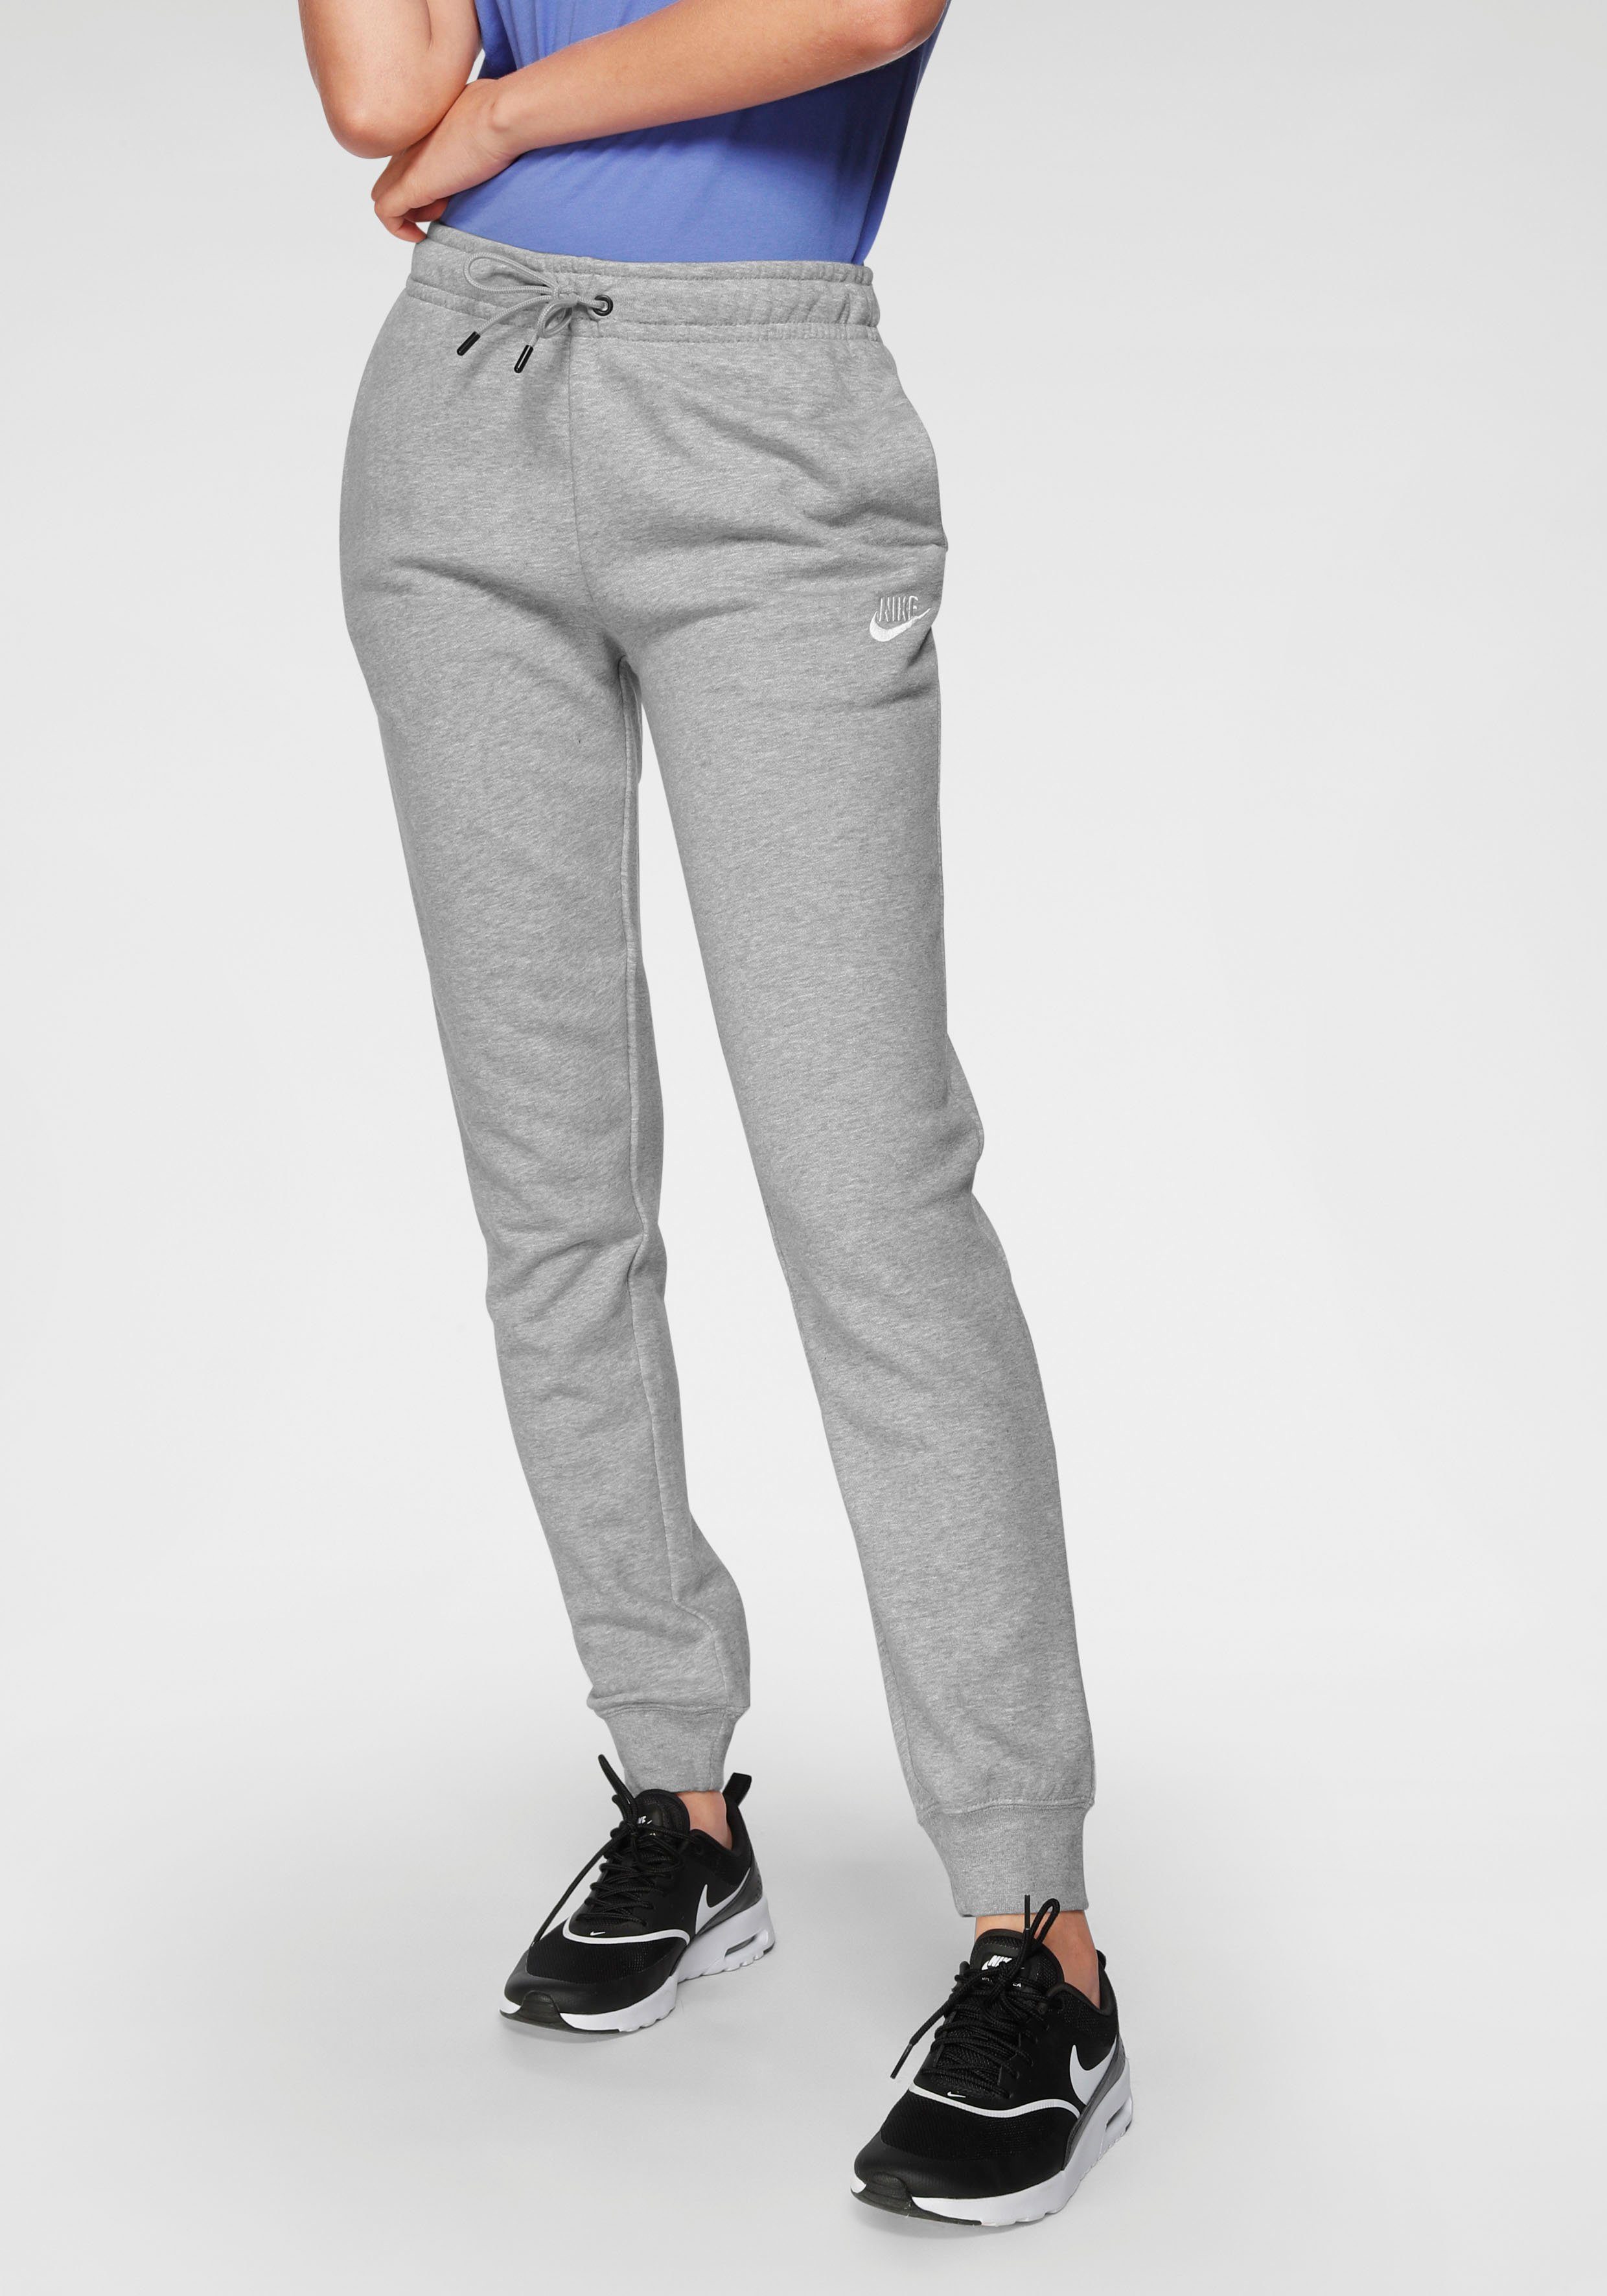 Nike Sportswear Jogginghose ESSENTIAL WOMENS FLEECE PANTS grau-meliert | Jogginghosen